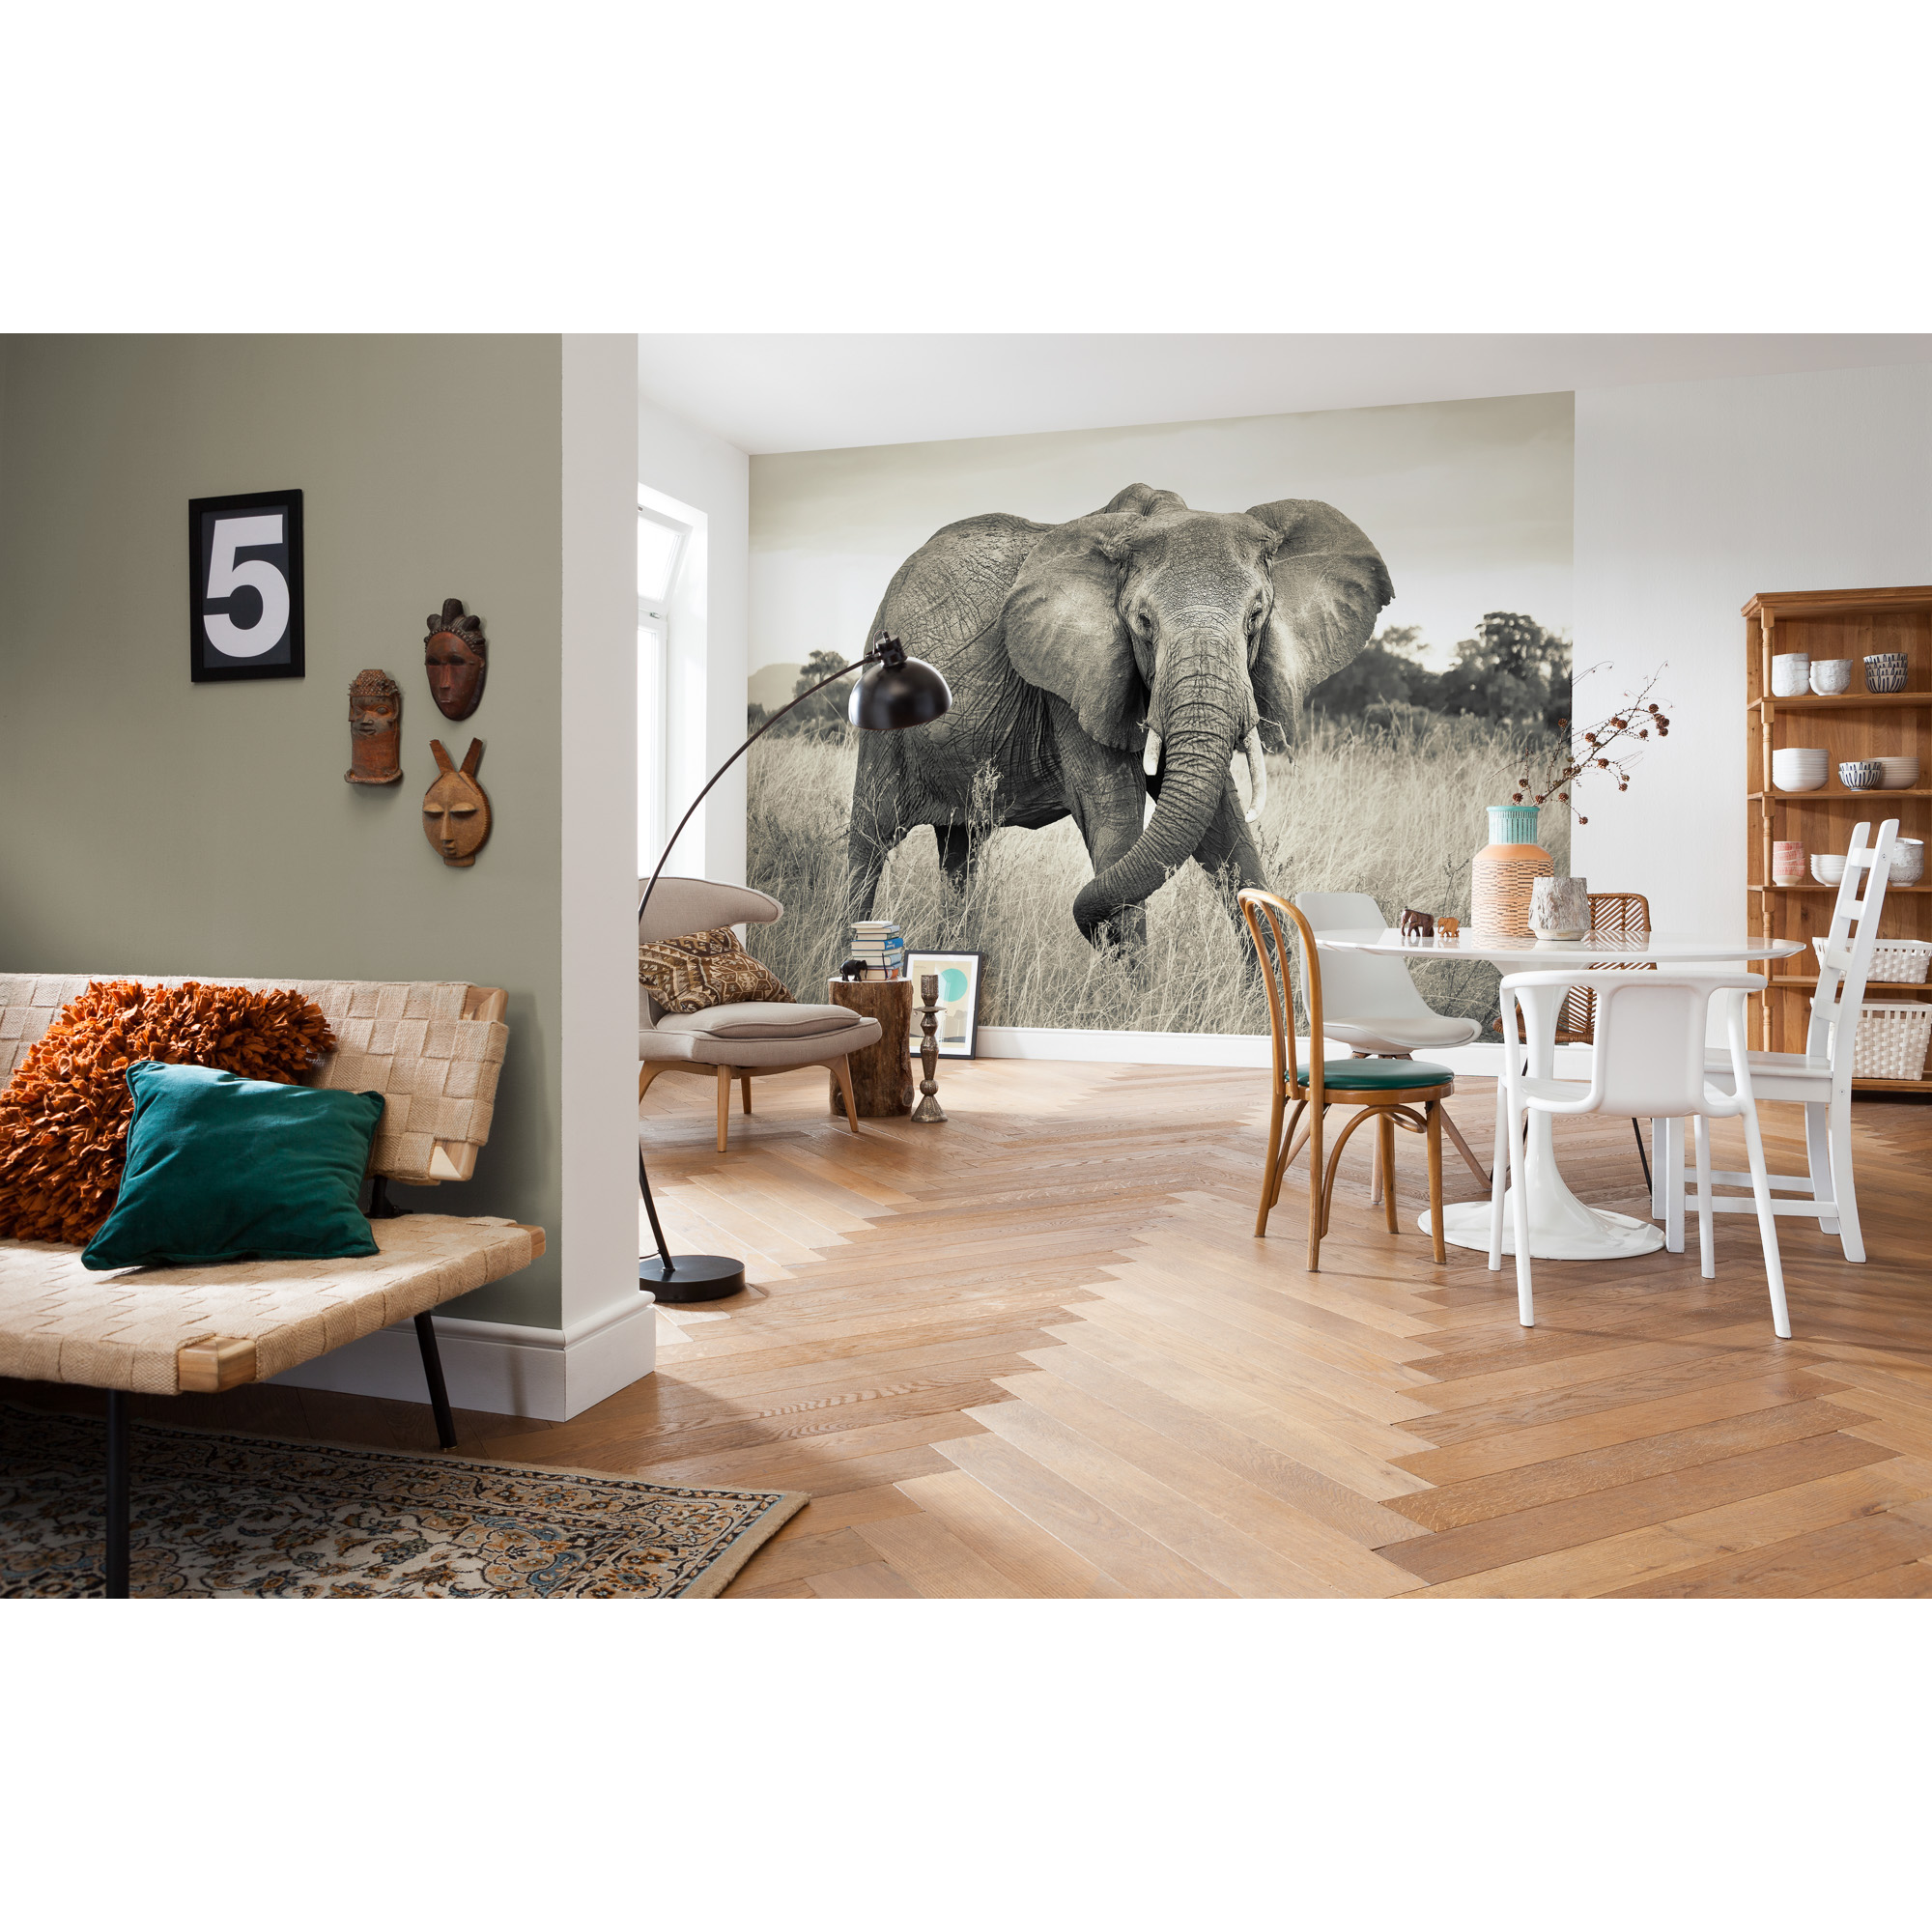 Vliesfototapete 'Elephant' 368 x 248 cm + product picture